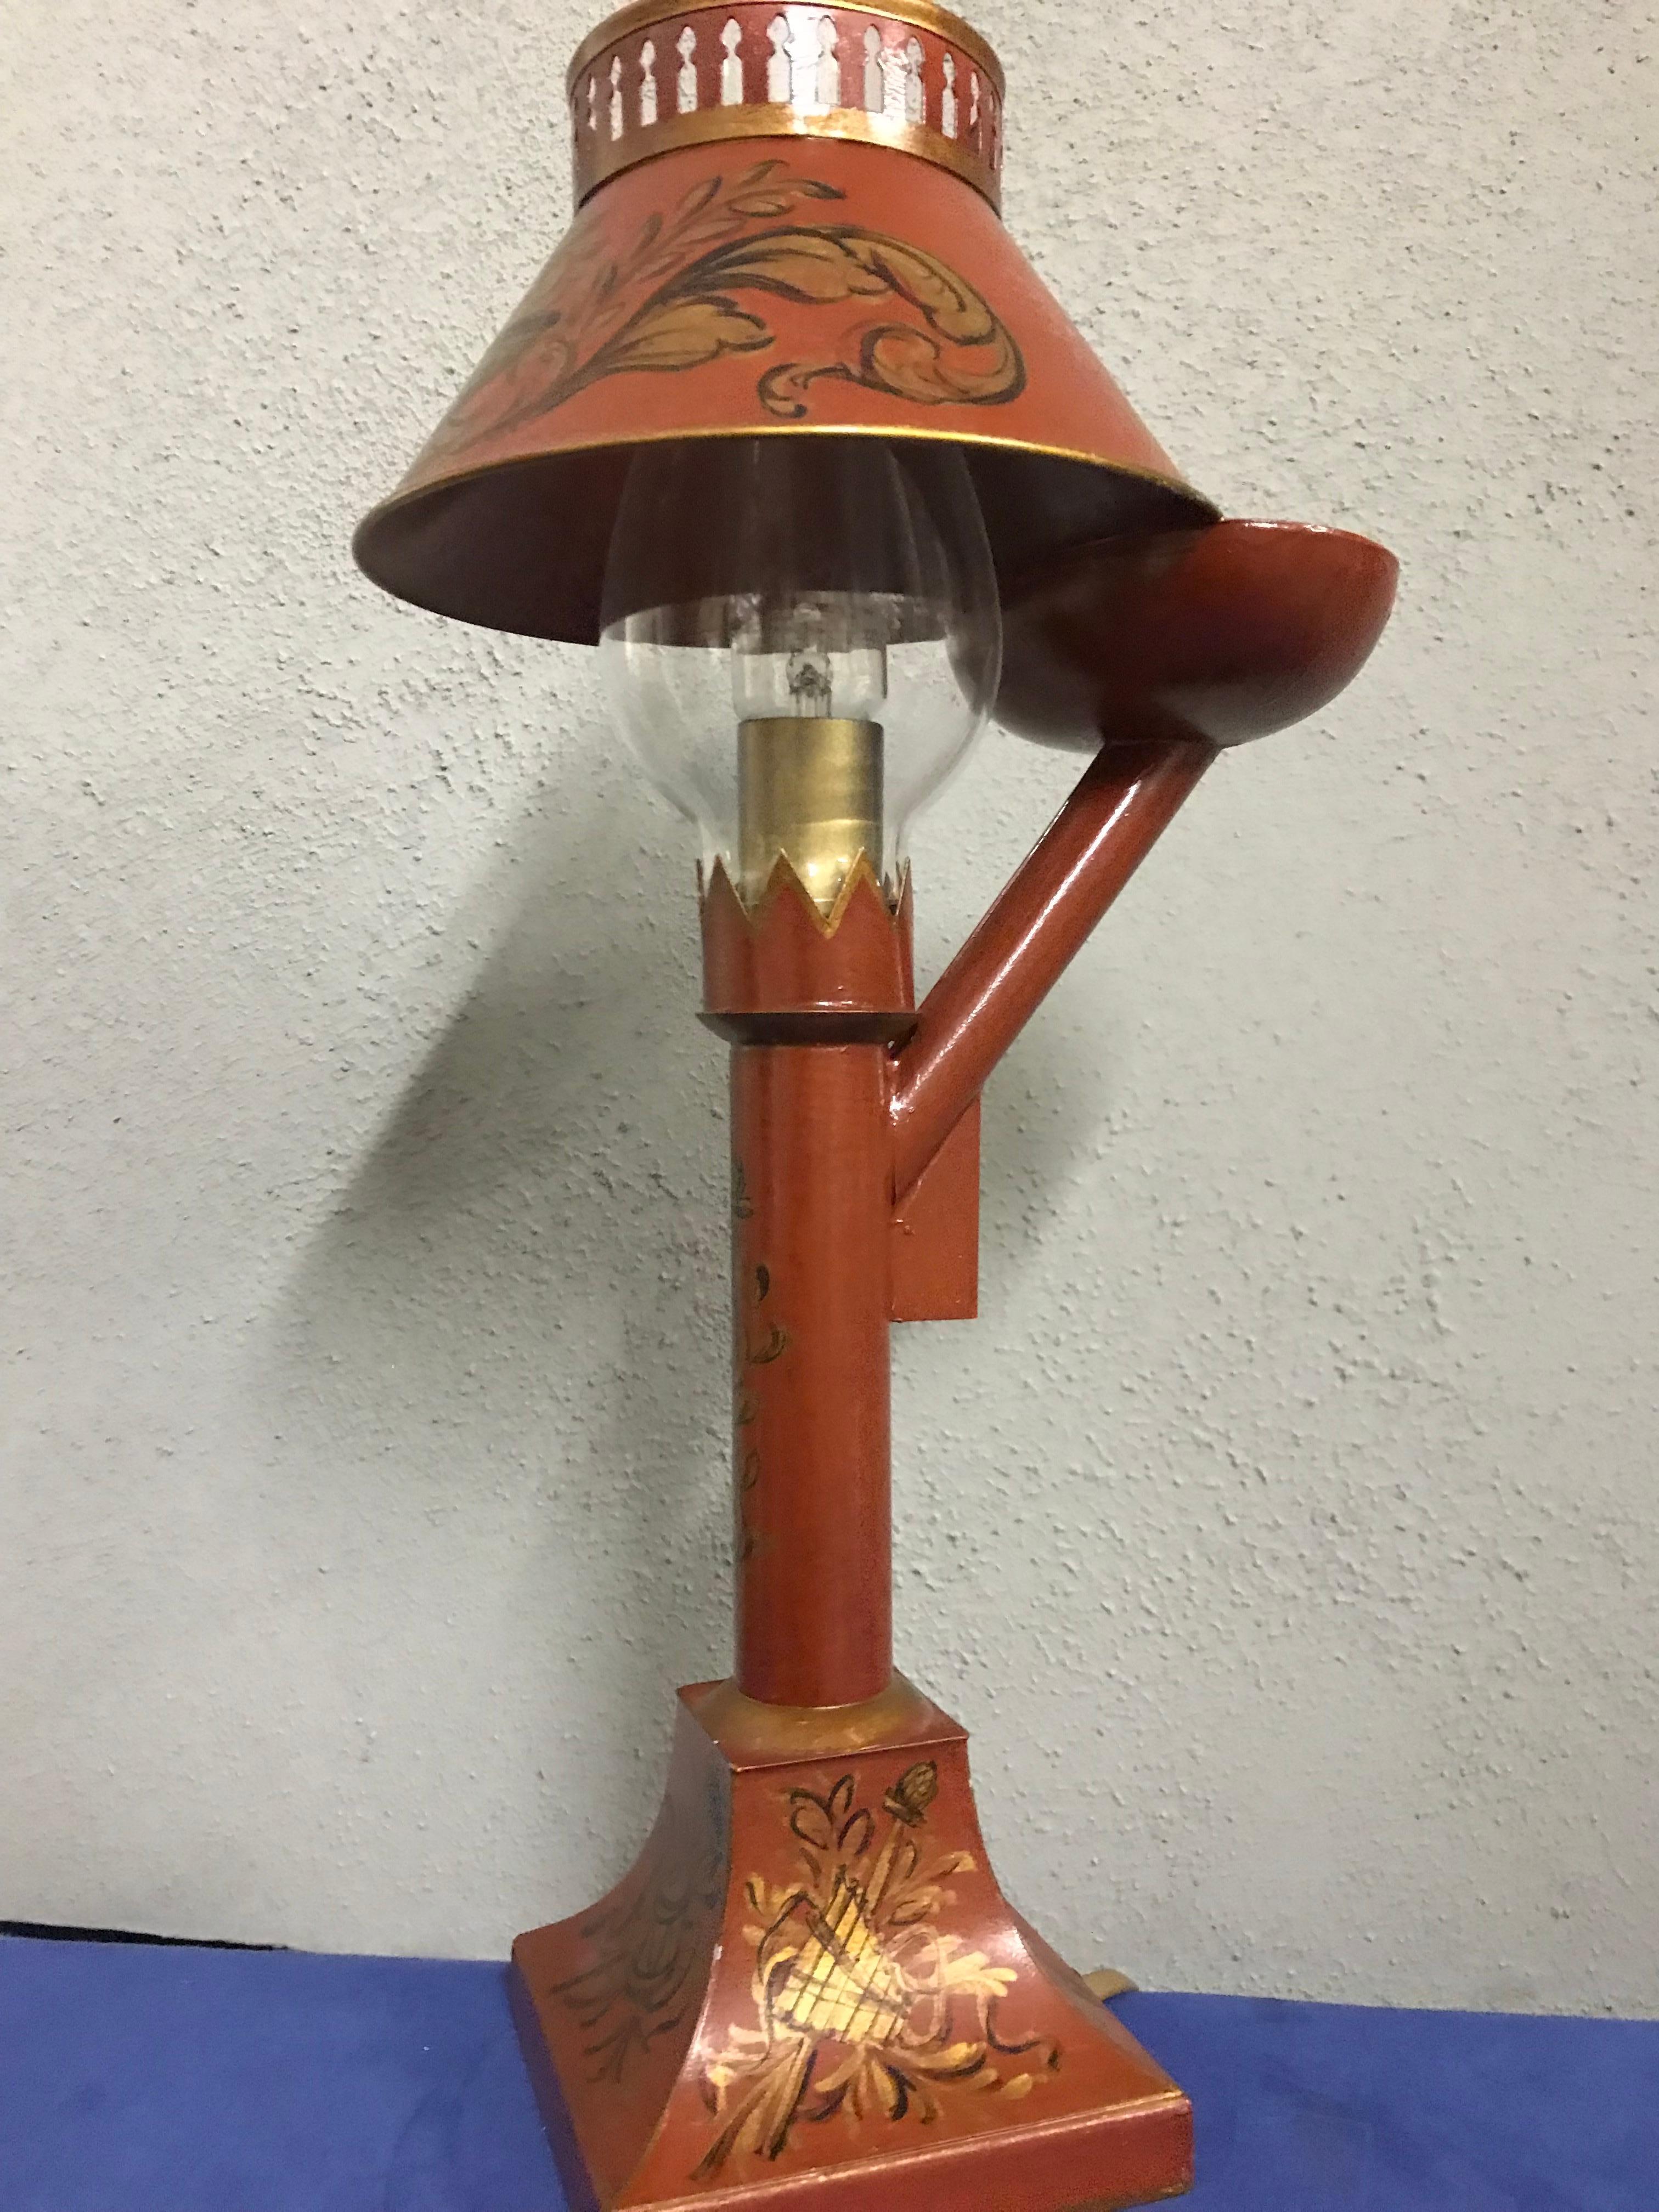 Exquisite kleine Tole-Lampe im englischen Stil von Gherardo Degli Albizzi in Form einer Öllampe mit handgemalter Dekoration im gesamten Bereich. Auf dem Sockel befinden sich klassische Verzierungen wie Musikinstrumente und Pflanzen. Das gleiche